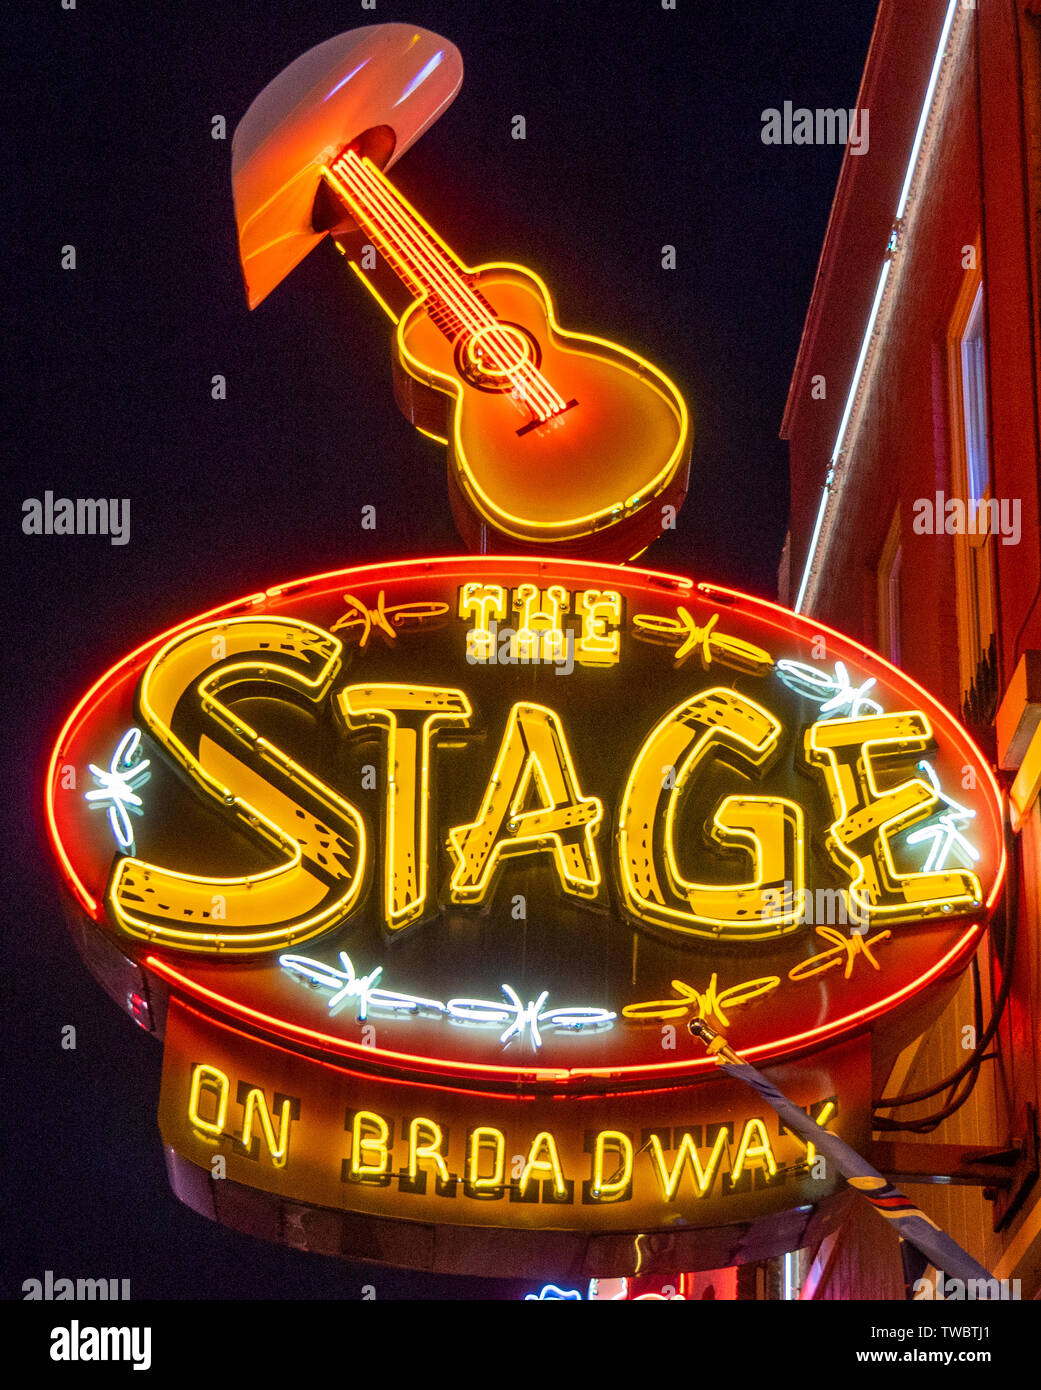 Restaurante bar y sala de conciertos el escenario en Broadway signo de neón iluminado por la noche en Broadway de Nashville, Tennessee, EE.UU.. Foto de stock